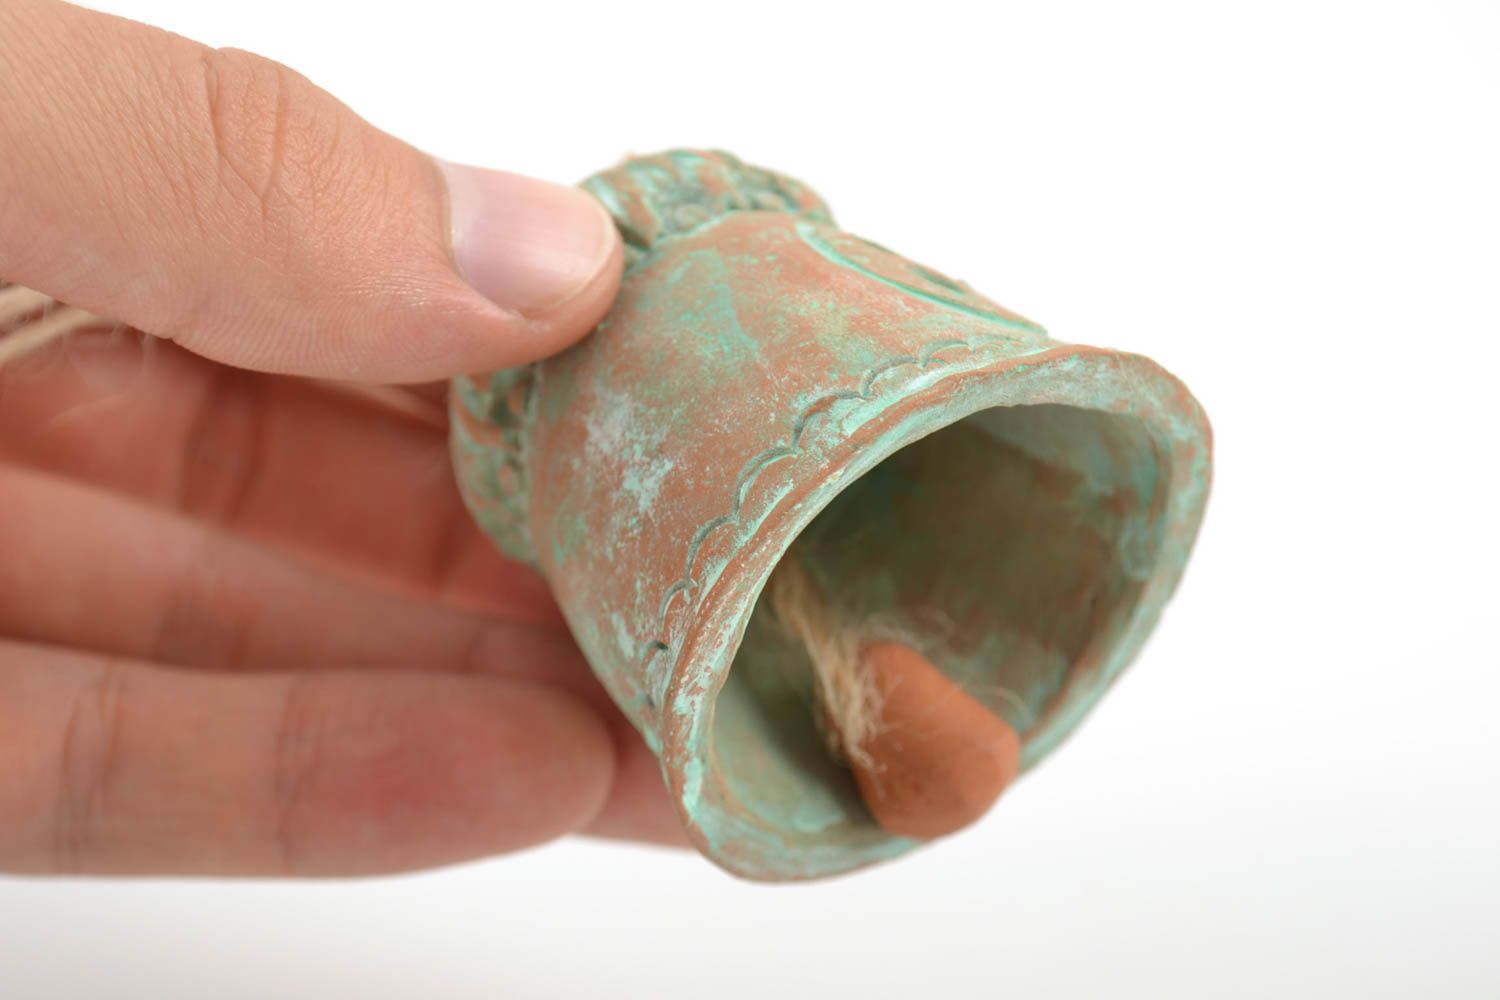 Handgemachtes Glöckchen aus Ton mit Masche originell schön in Form eines Hauses foto 2